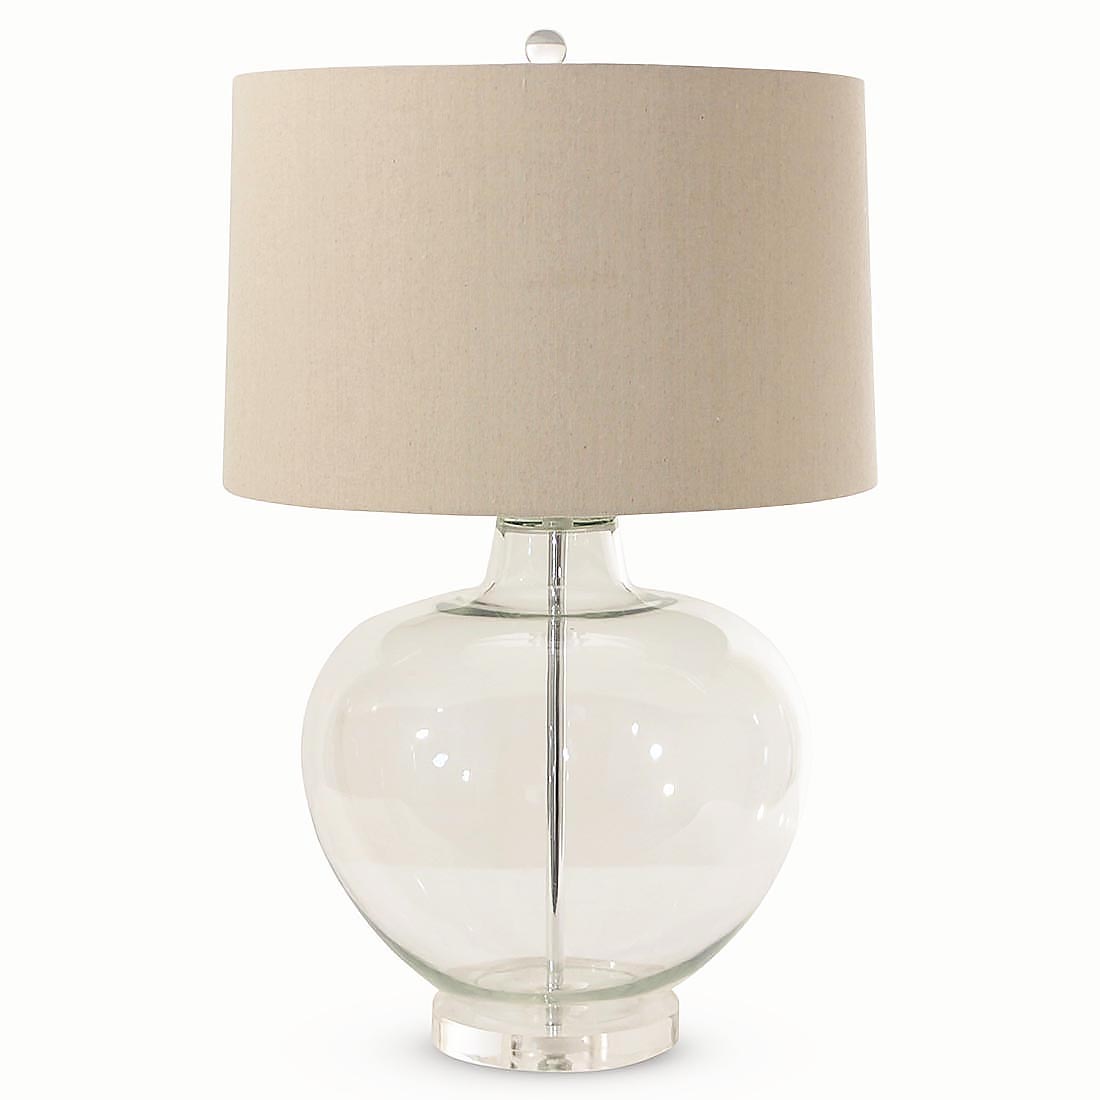 Glass Urn Table Lamp With Natural Shade, Natural Table Lamp Shades Uk